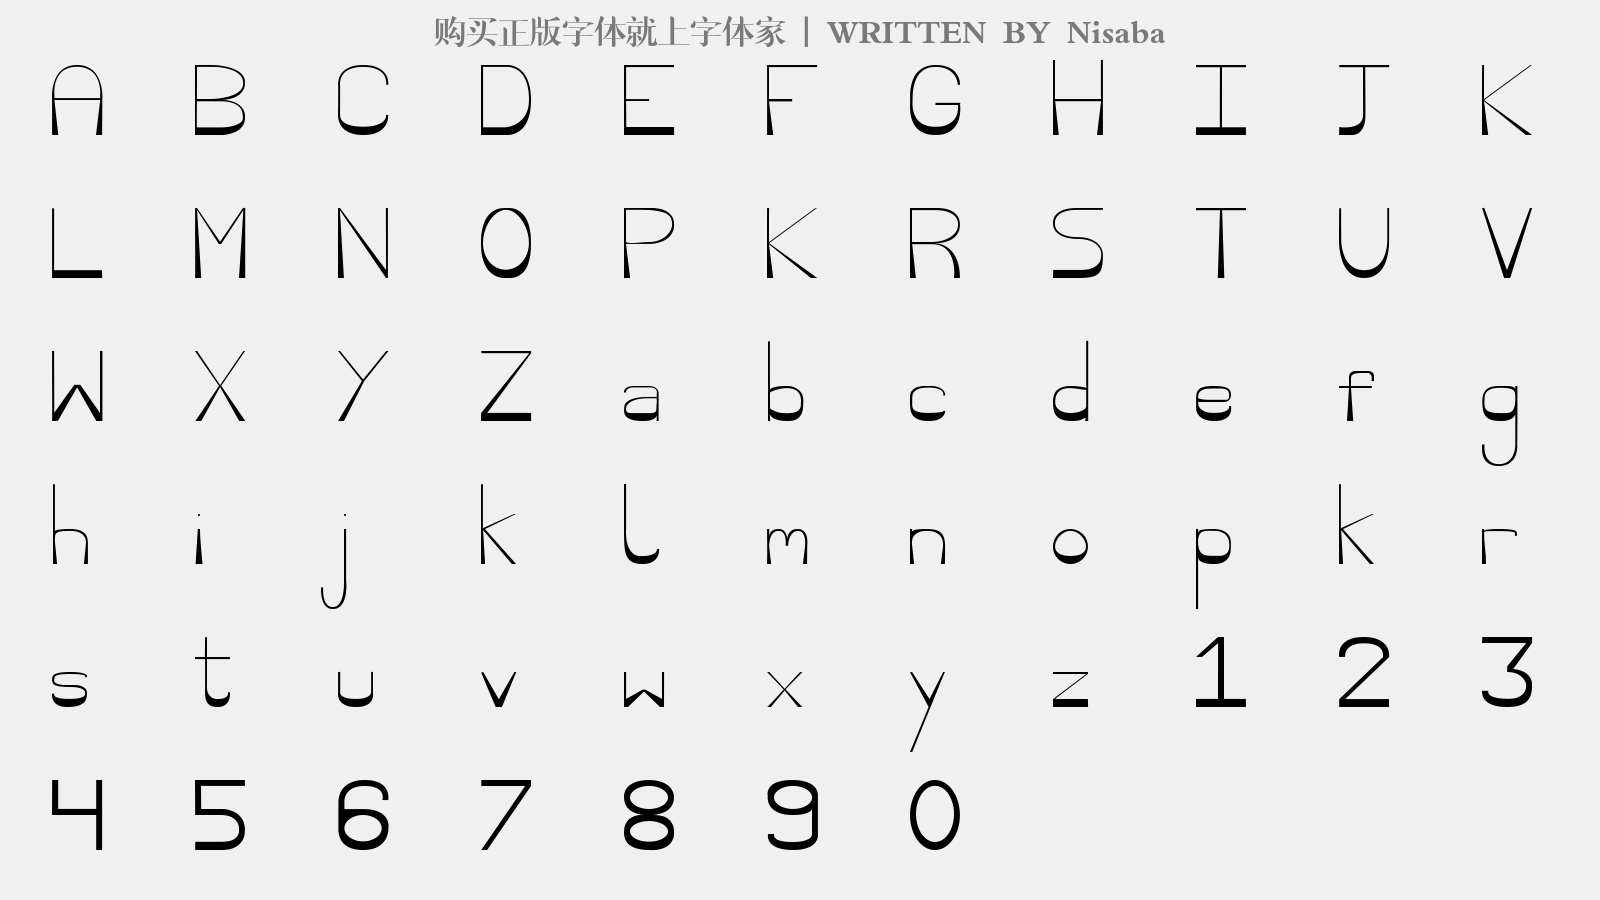 Nisaba - 大写字母/小写字母/数字